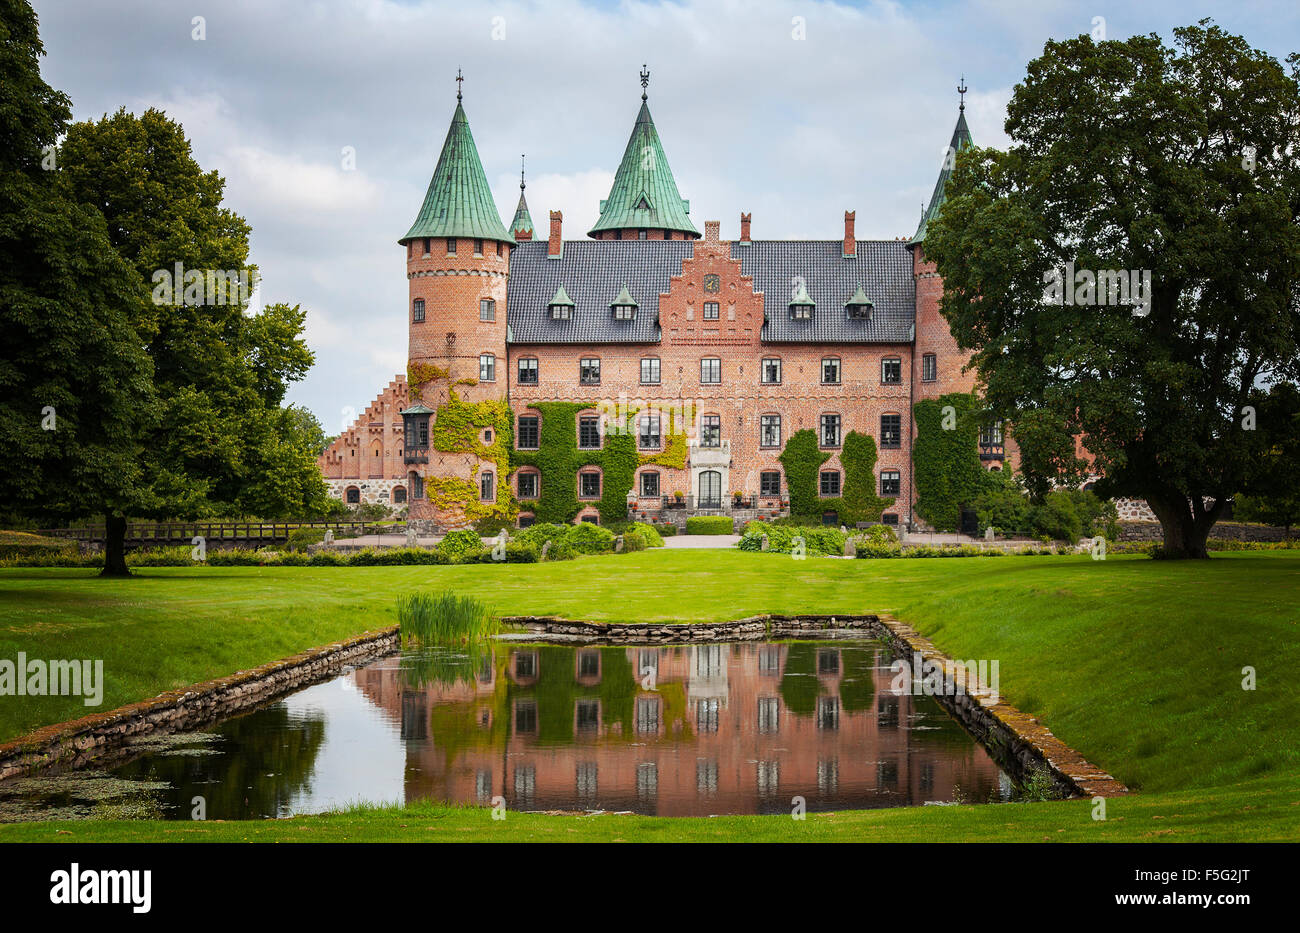 Immagine della storybook castello di Trolleholm, Svezia. Foto Stock